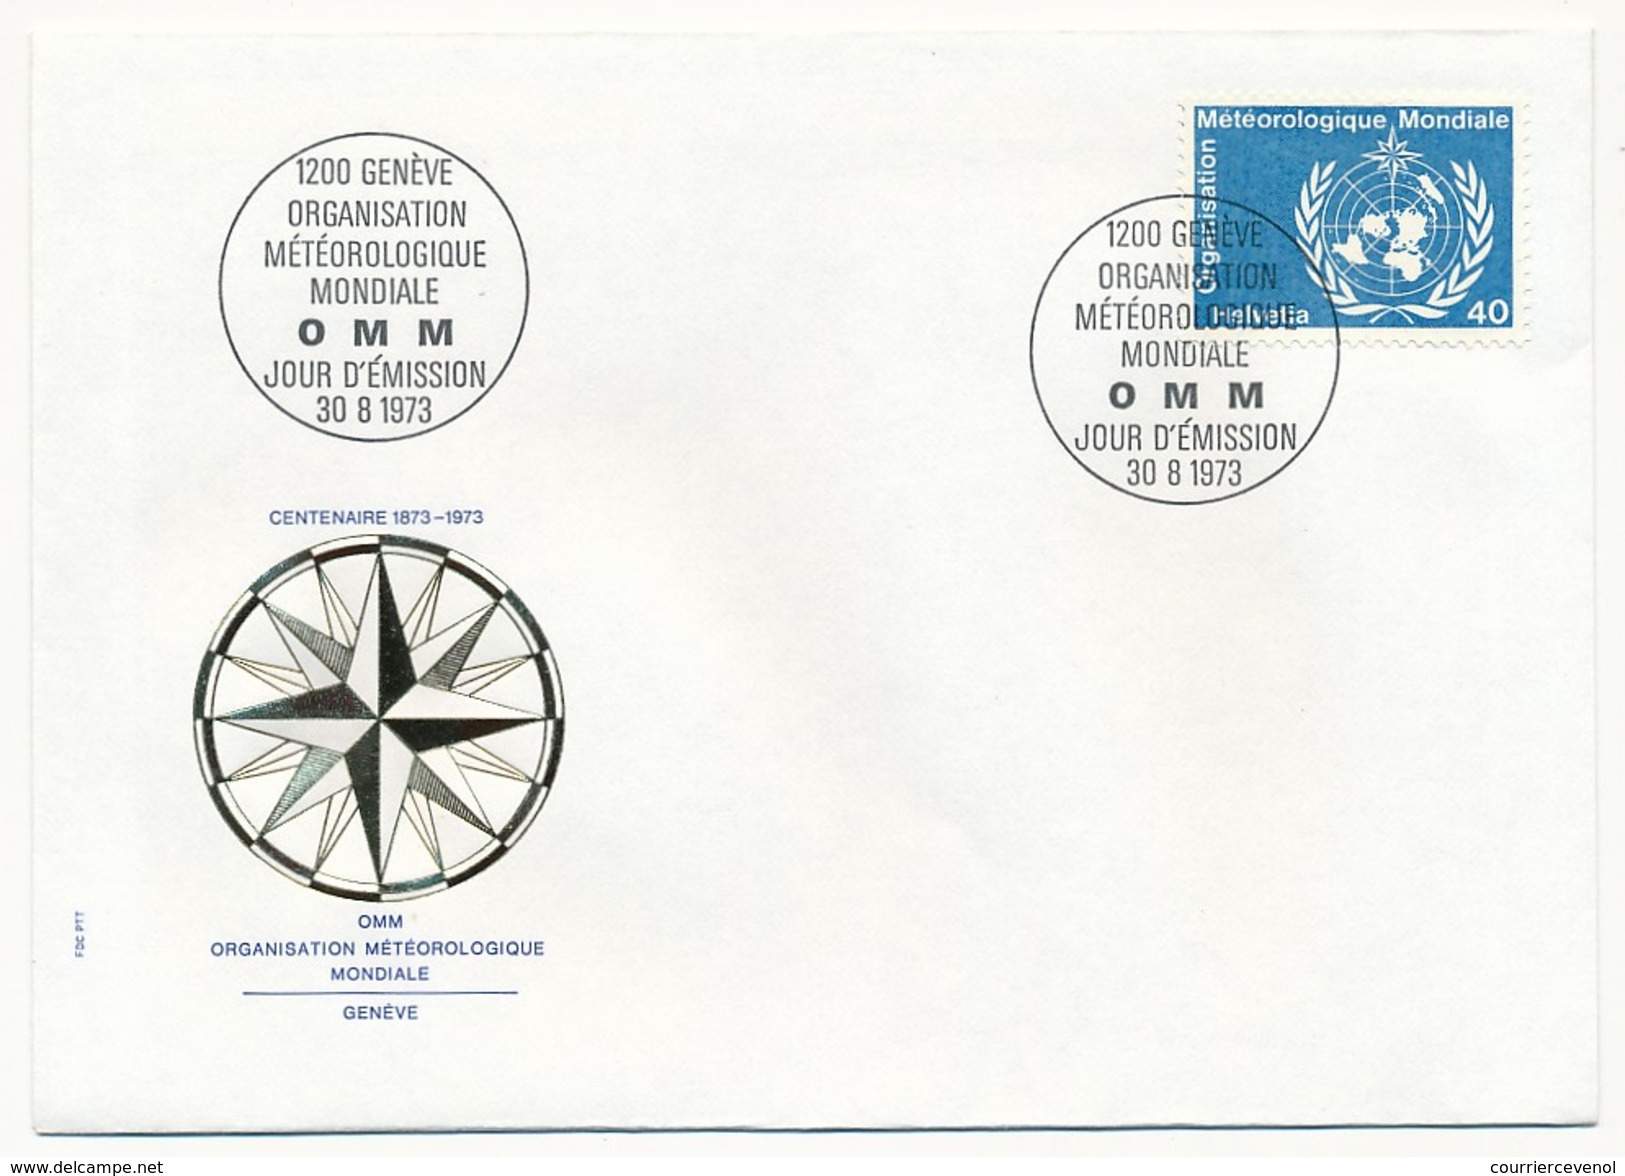 SUISSE - 8 Enveloppes FDC - Organisation Météorologique Mondiale 1973 (Timbres De Service) - Protection De L'environnement & Climat